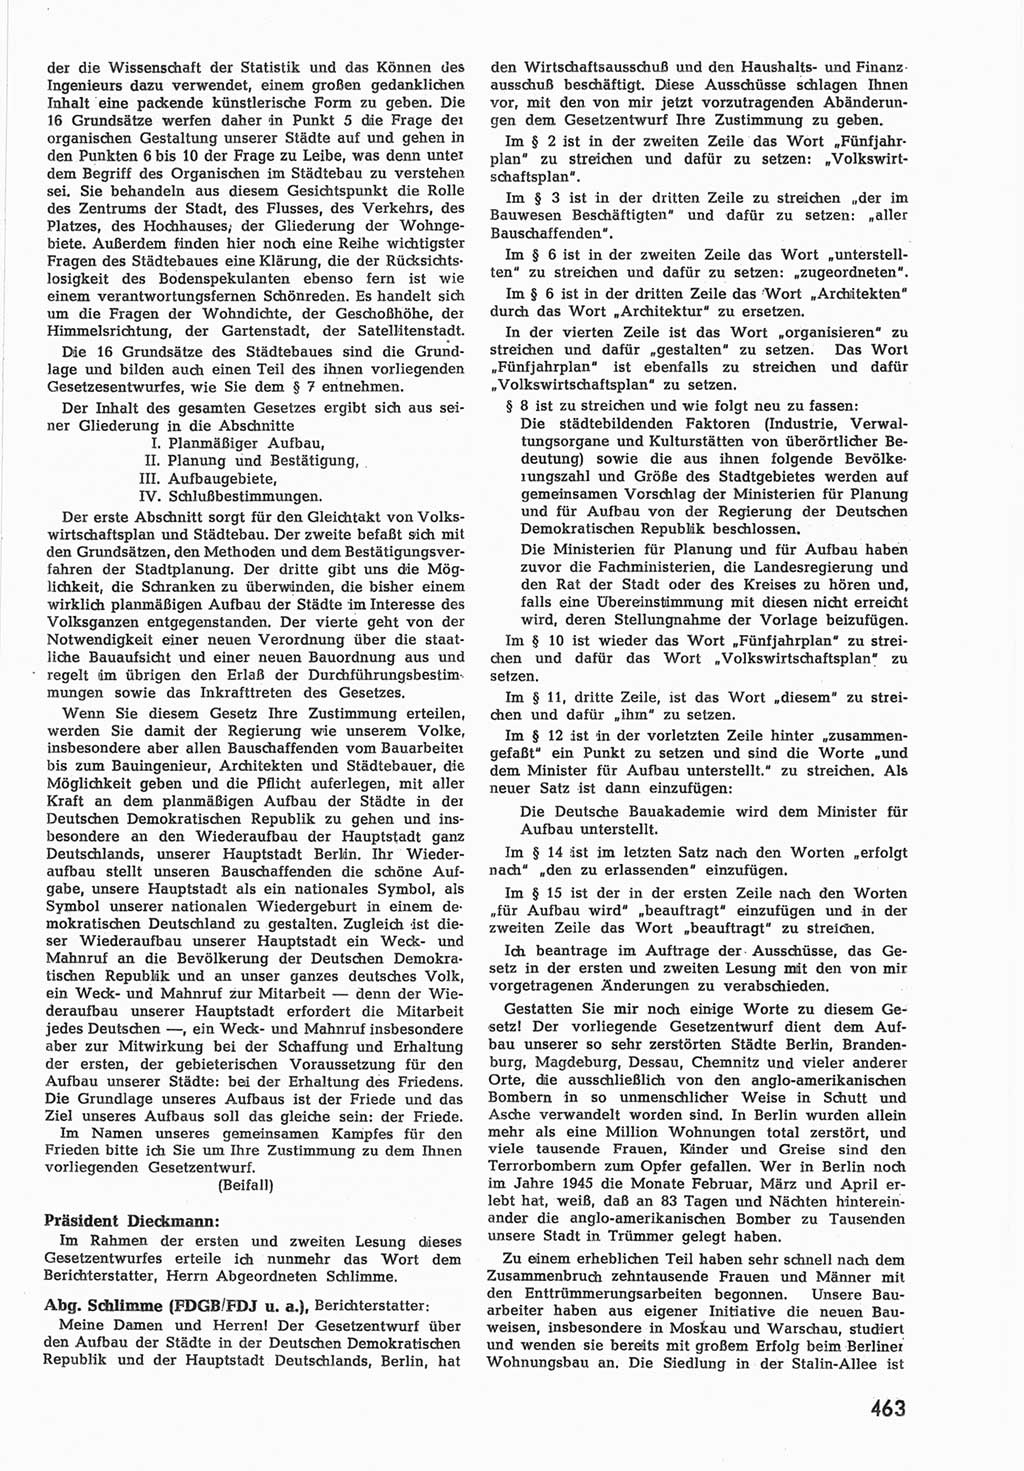 Provisorische Volkskammer (VK) der Deutschen Demokratischen Republik (DDR) 1949-1950, Dokument 481 (Prov. VK DDR 1949-1950, Dok. 481)